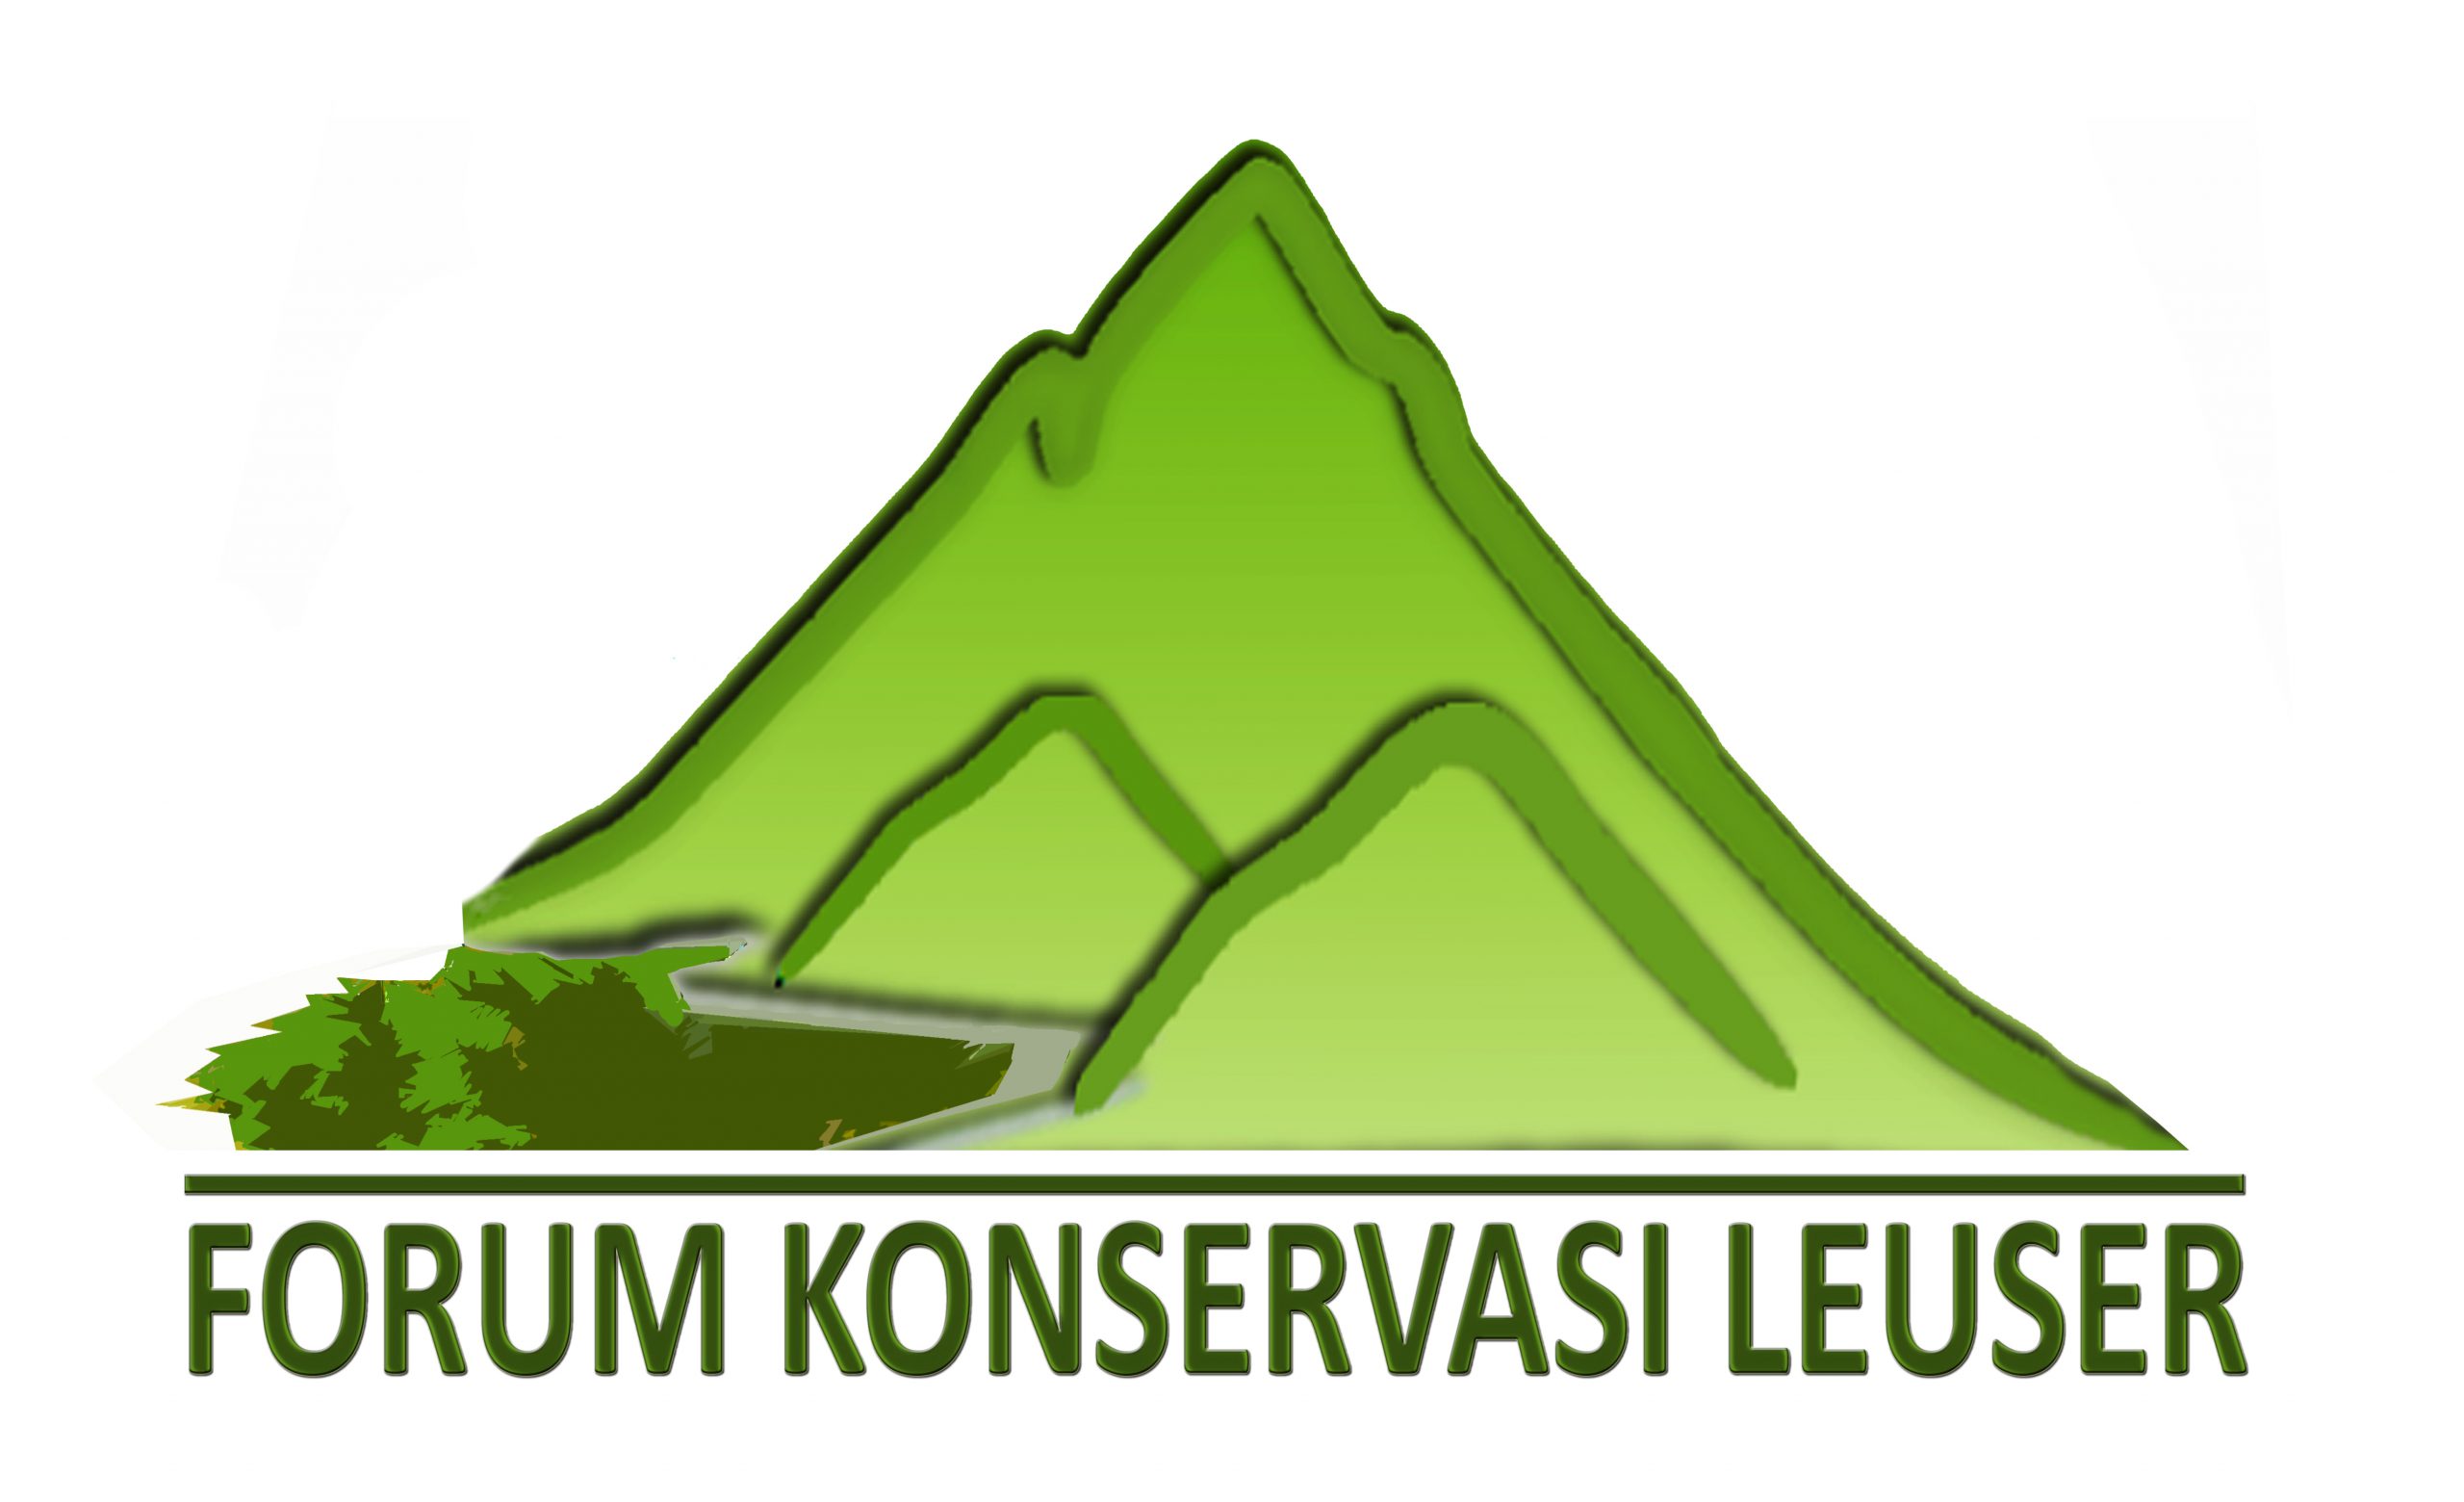 FKL logo